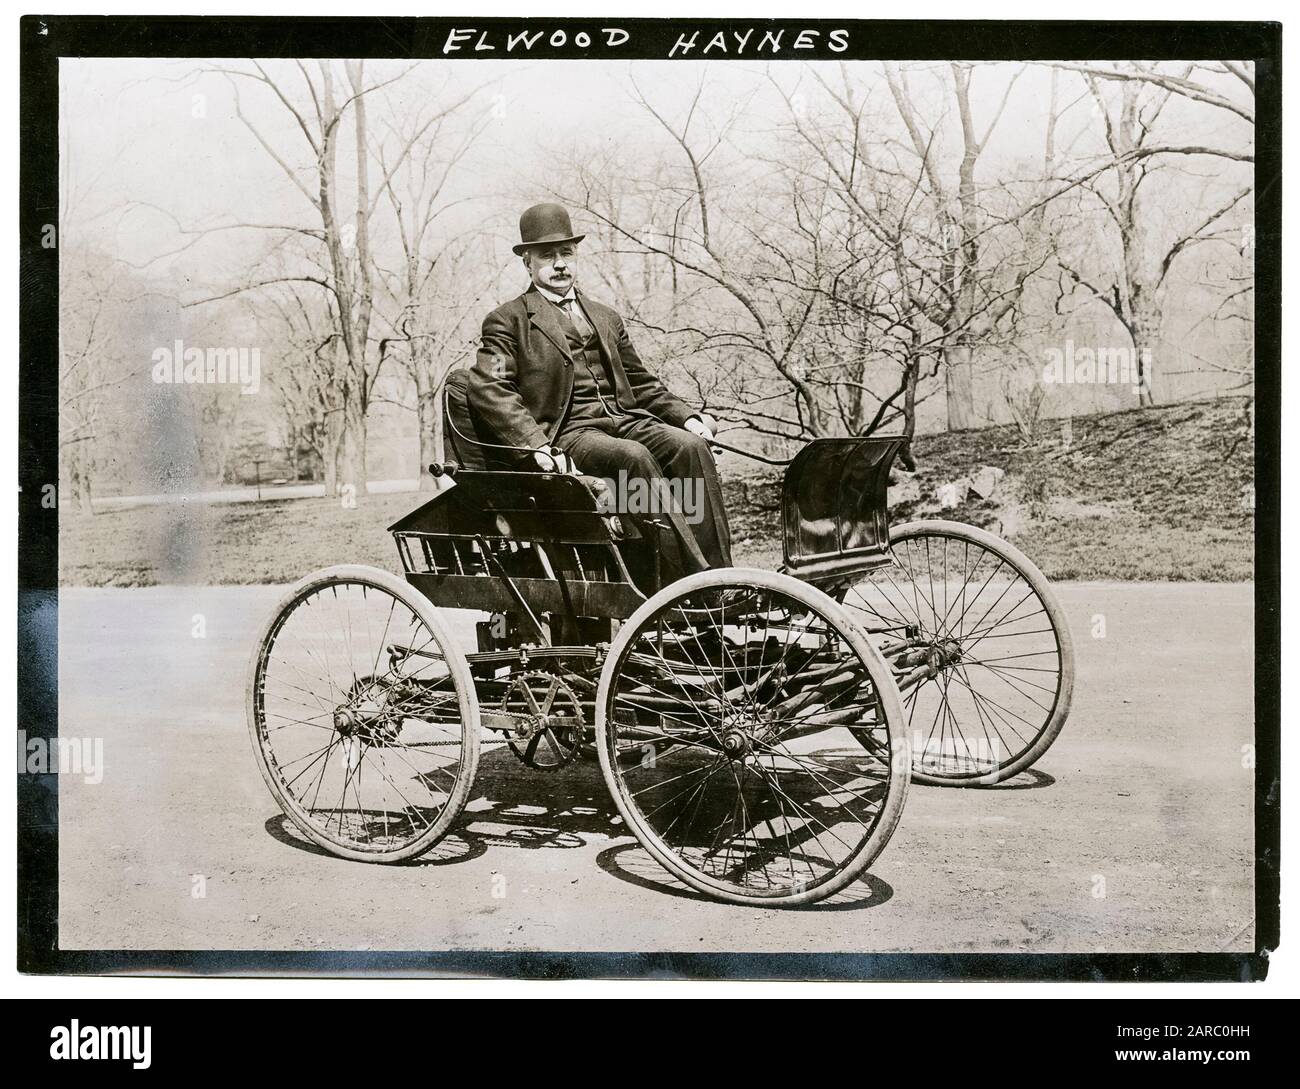 Elwood Haynes (1857-1925) dans sa première voiture, The Pioneer, 1893-1894, photo vers 1910 Banque D'Images